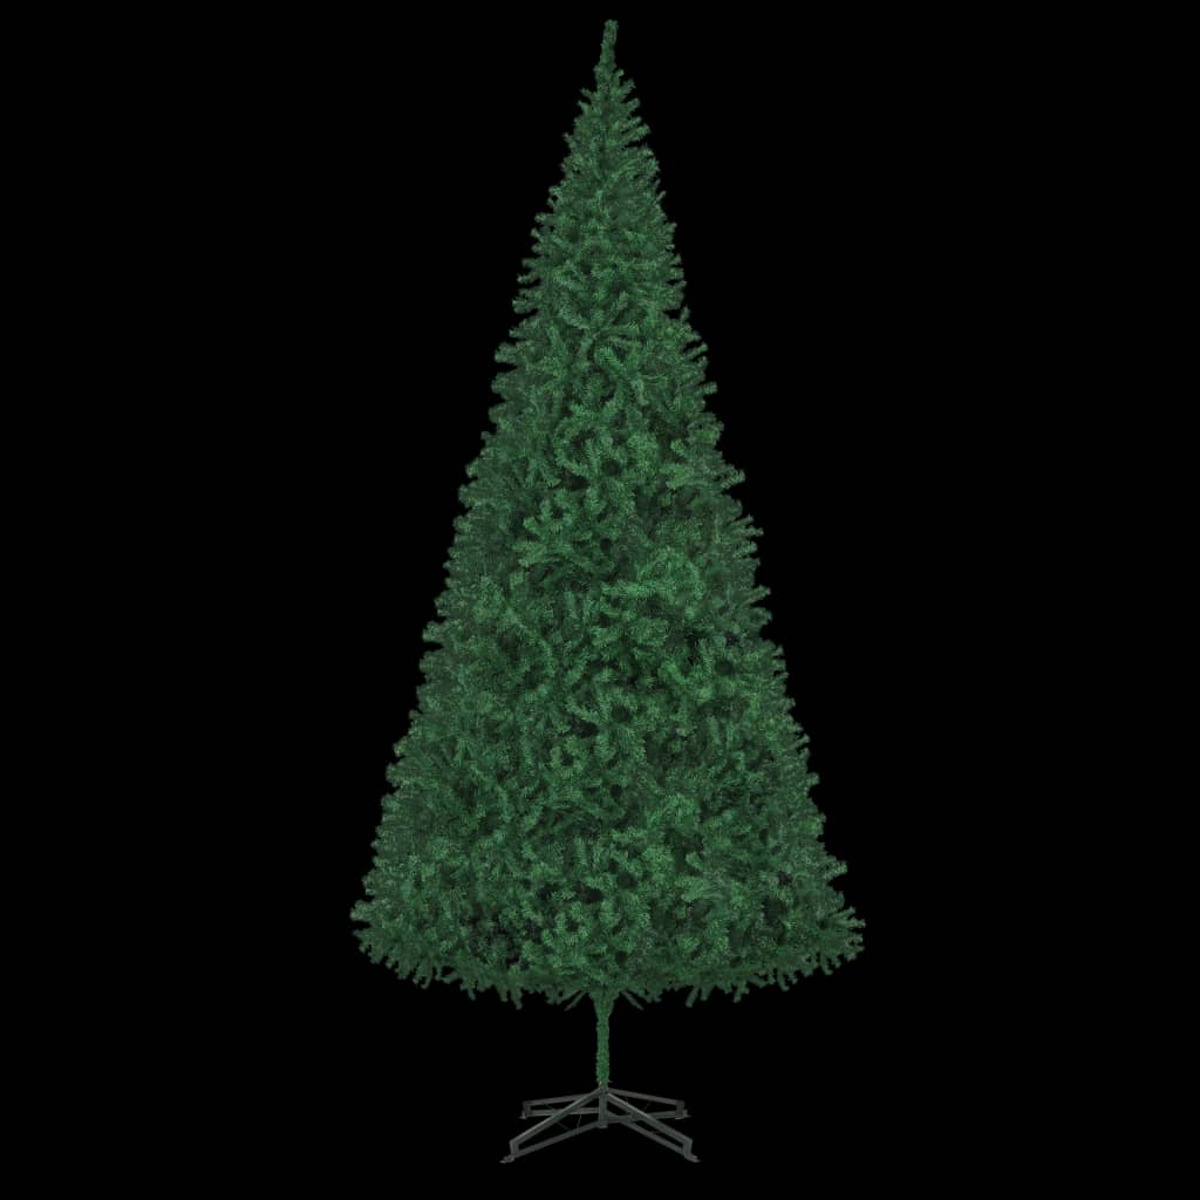 VIDAXL 3077739 Weihnachtsbaum